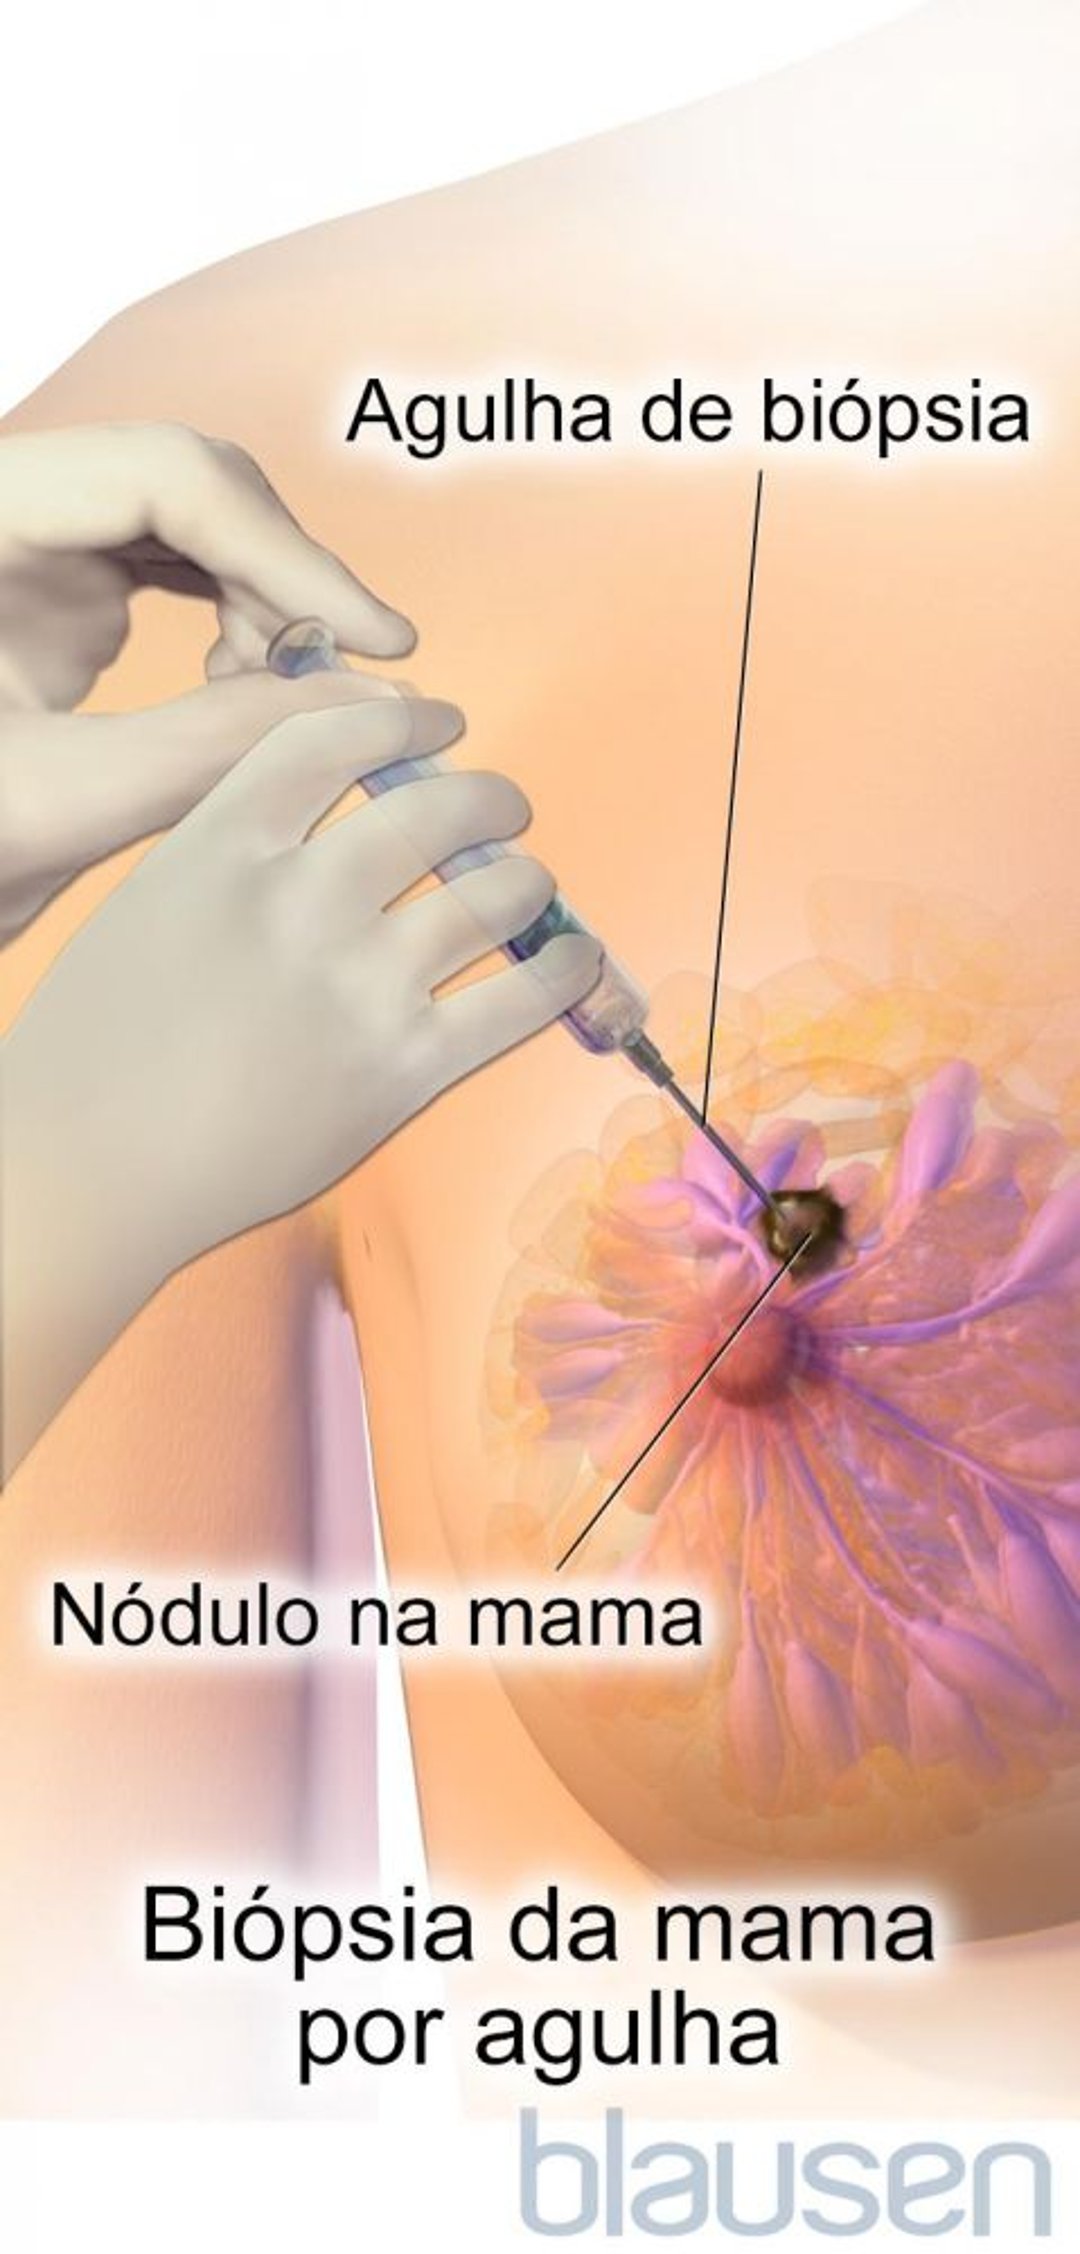 Biópsia da mama por agulha